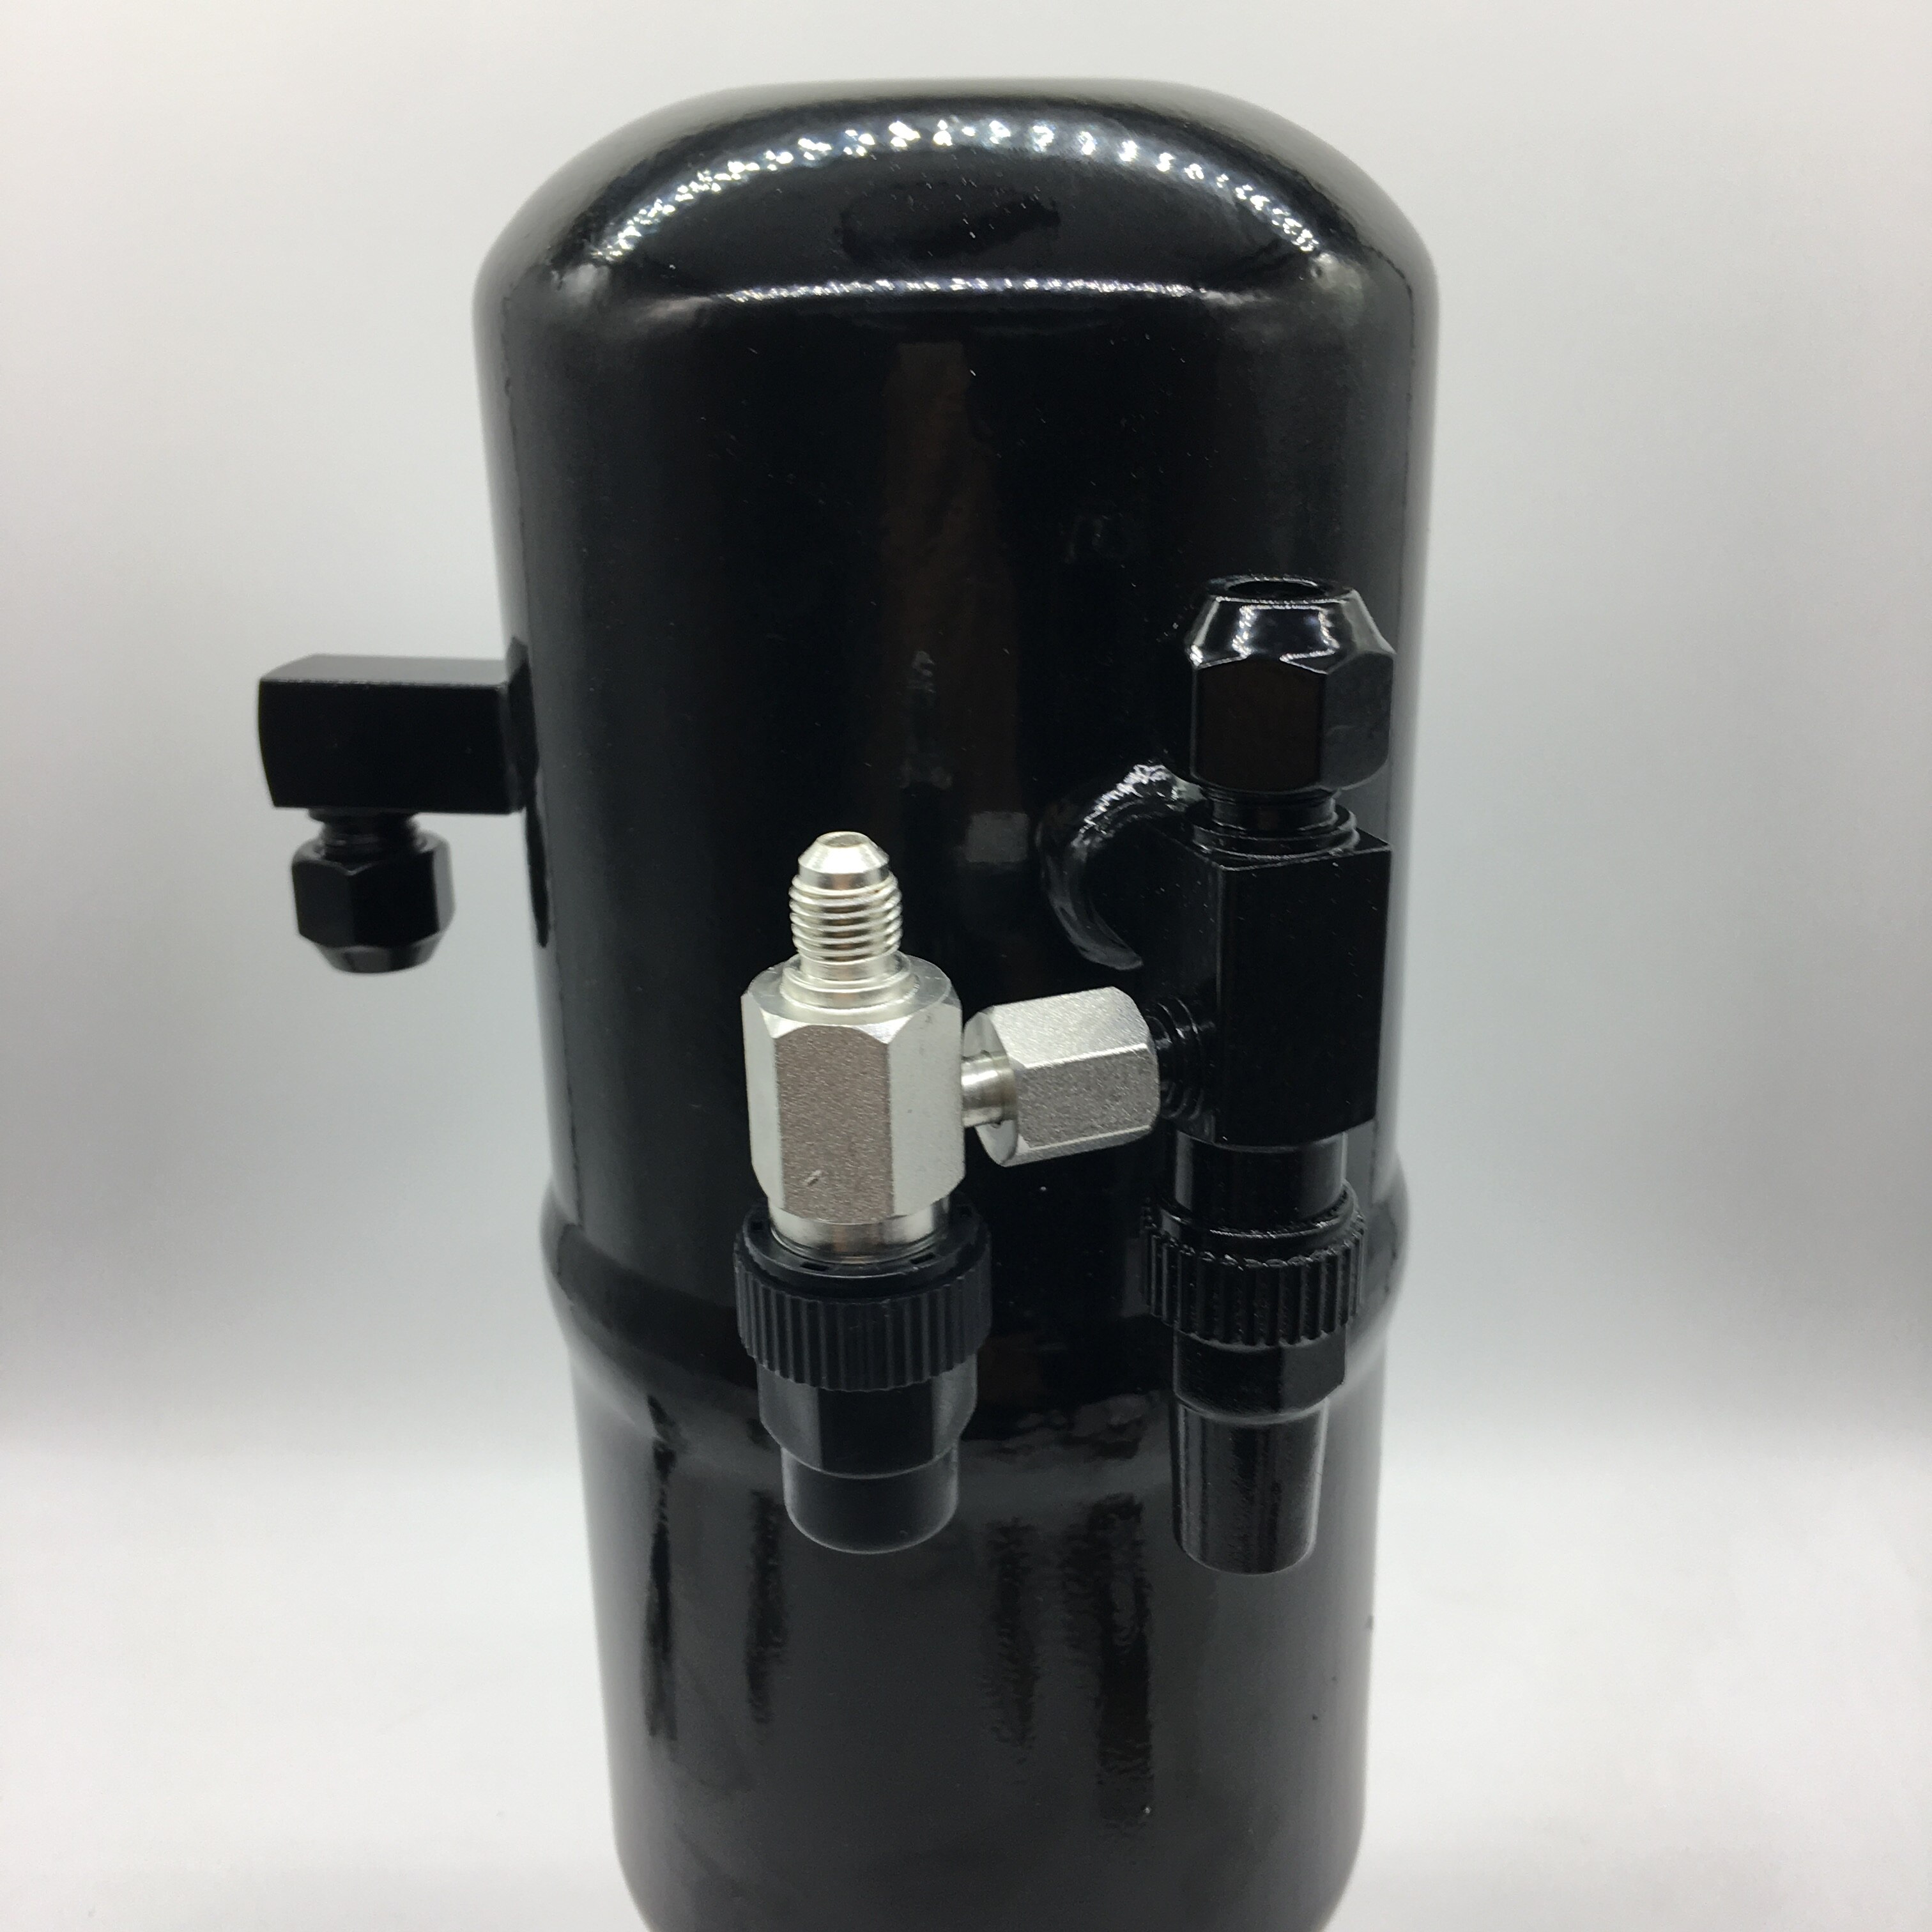 Vandret rotalock-afspærringsventil arbejder sammen med vinkelventil, der giver adgang til flere funktioner i køleenheden